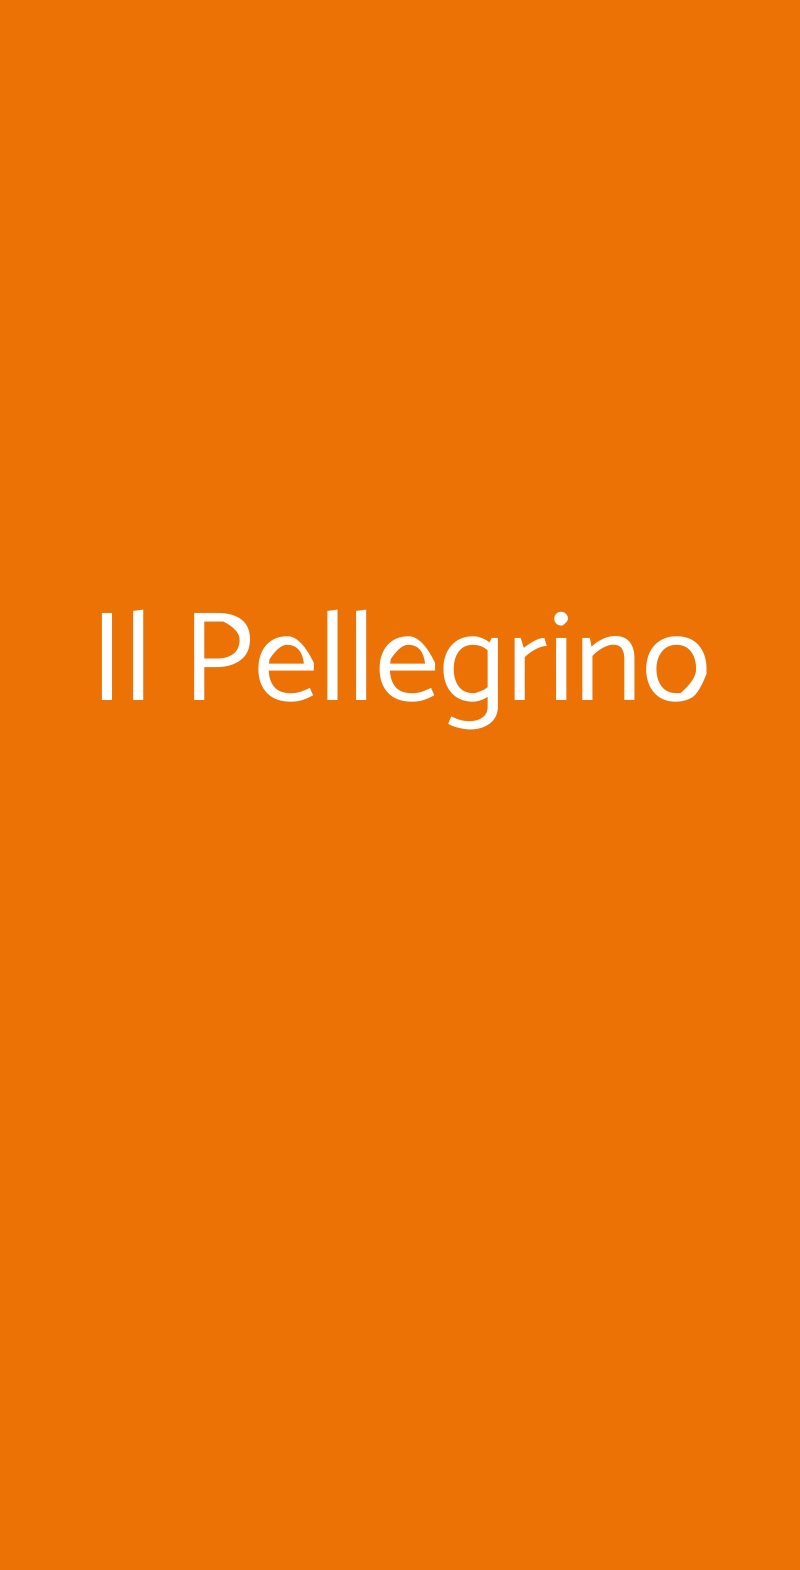 Il Pellegrino Milano menù 1 pagina